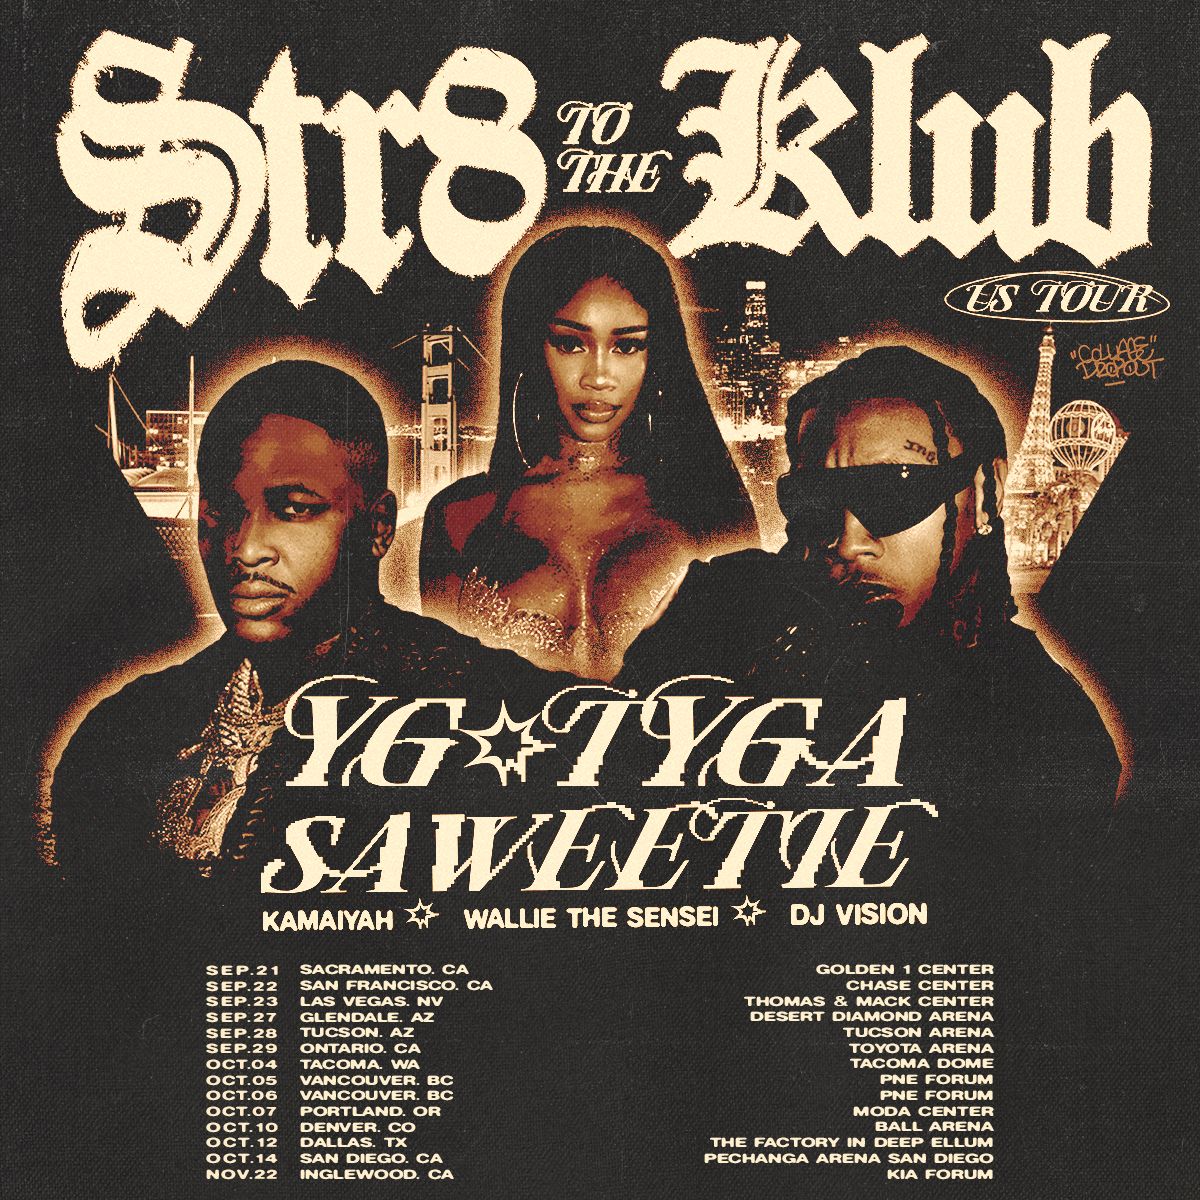 YG, Tyga & Saweetie Announce ‘Str8 To The Klub’ Tour